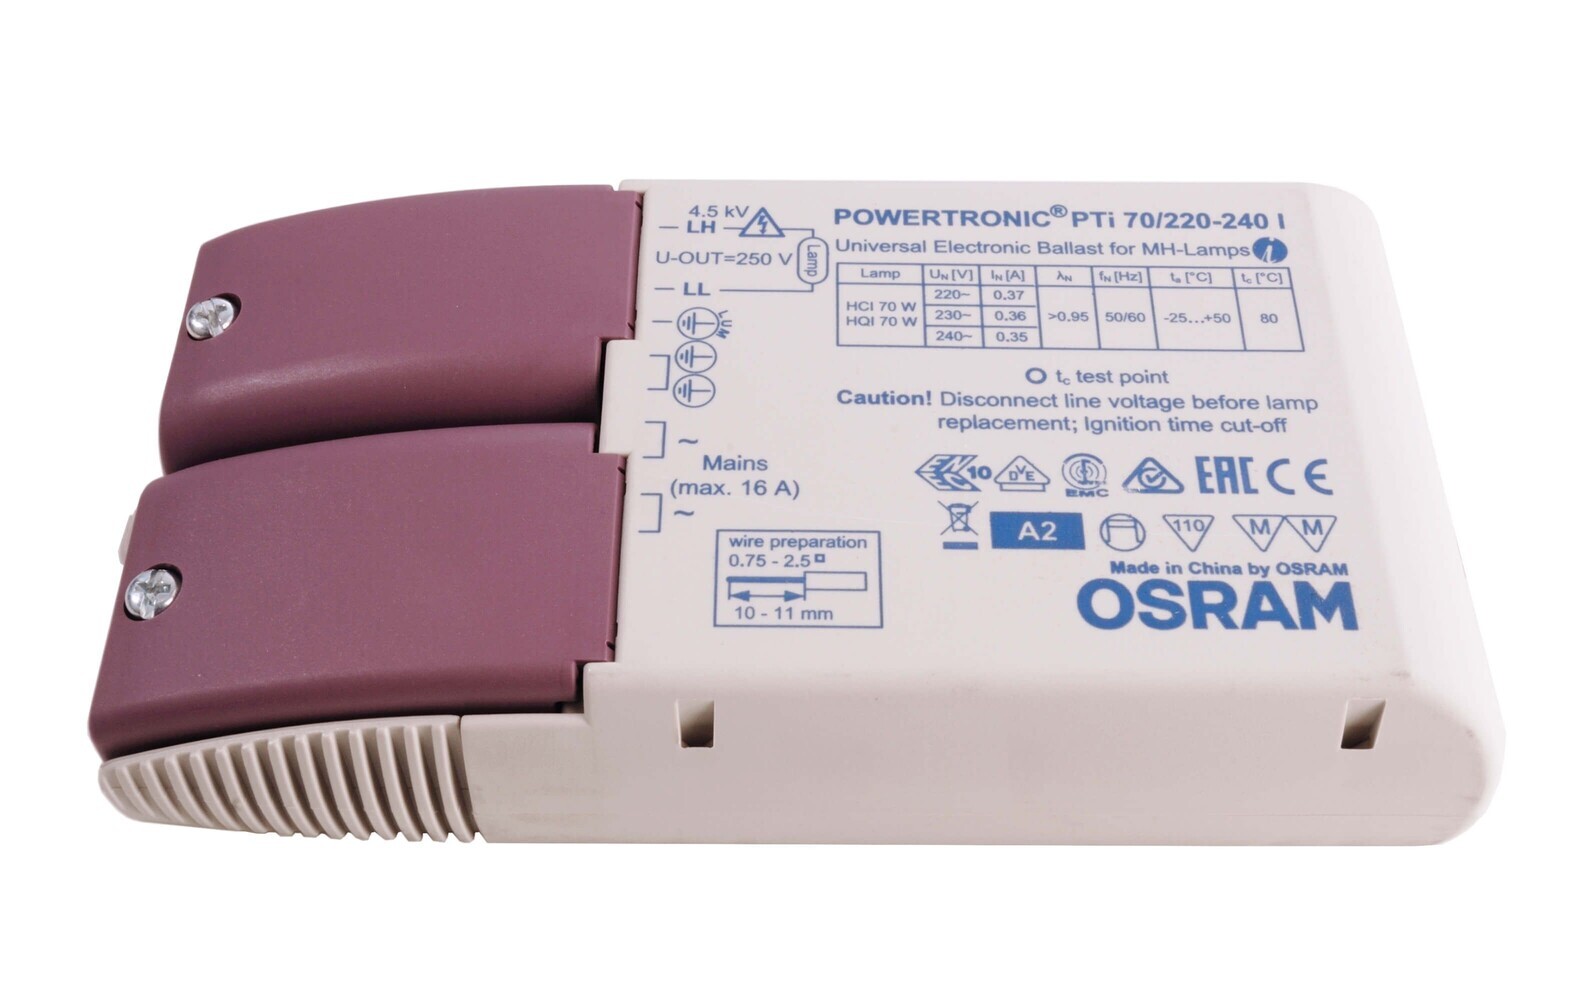 Ein hochwertiges LED Netzteil von OSRAM, das eine stabilisierte und gleichmäßige Energieversorgung gewährleistet